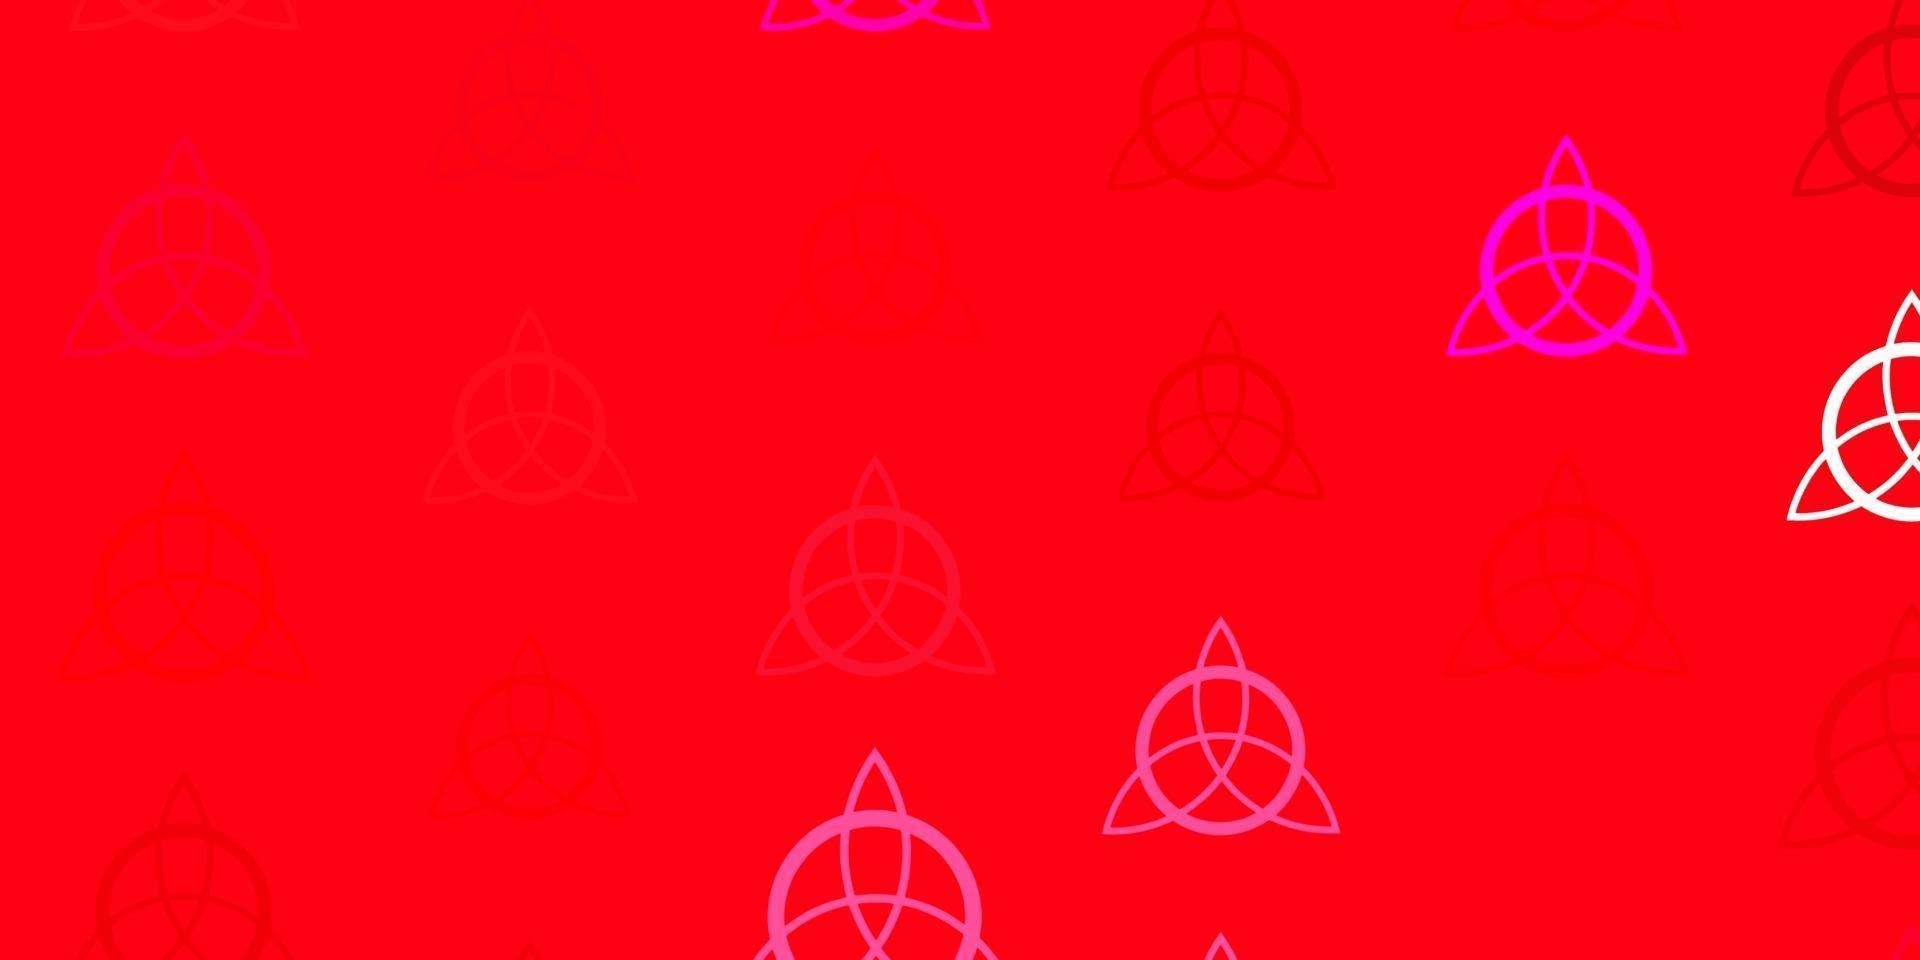 fond de vecteur rose clair, rouge avec des symboles occultes.